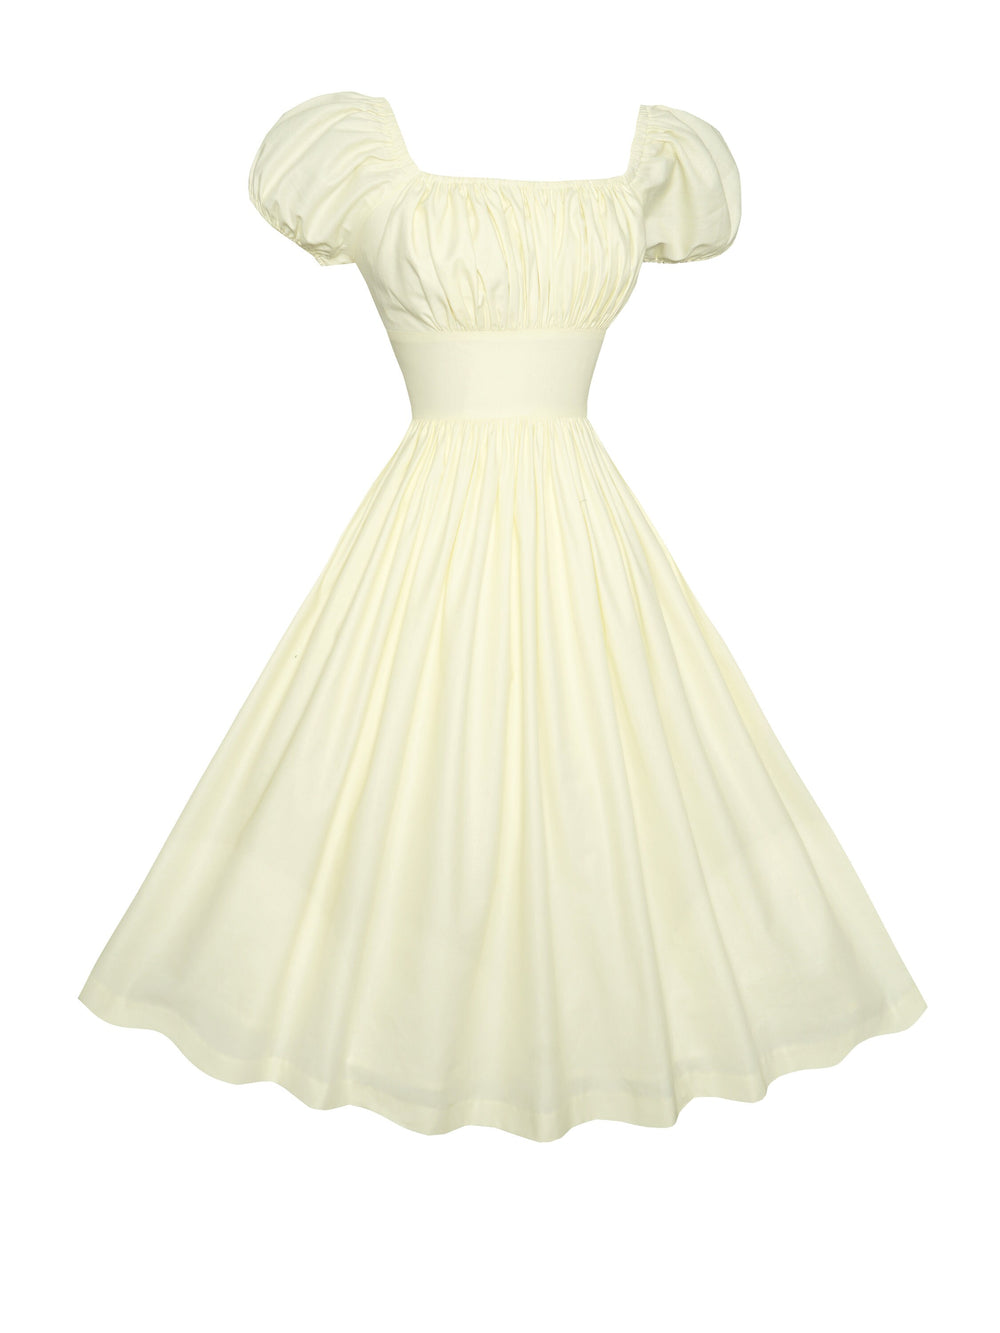 MTO - Loretta Dress in Cream Cotton